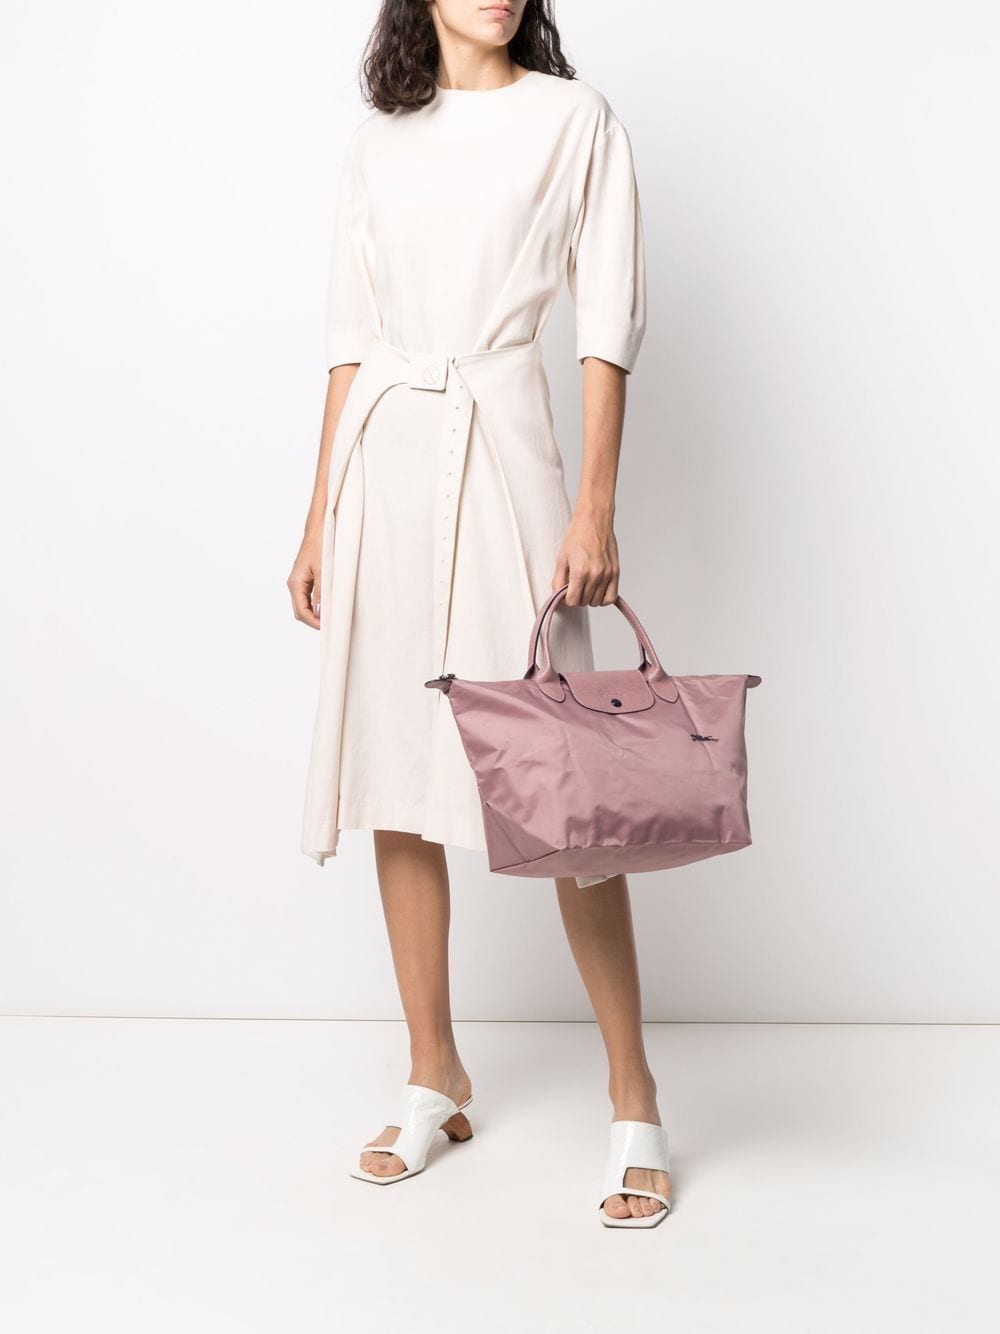 фото Longchamp сумка-тоут le pliage среднего размера